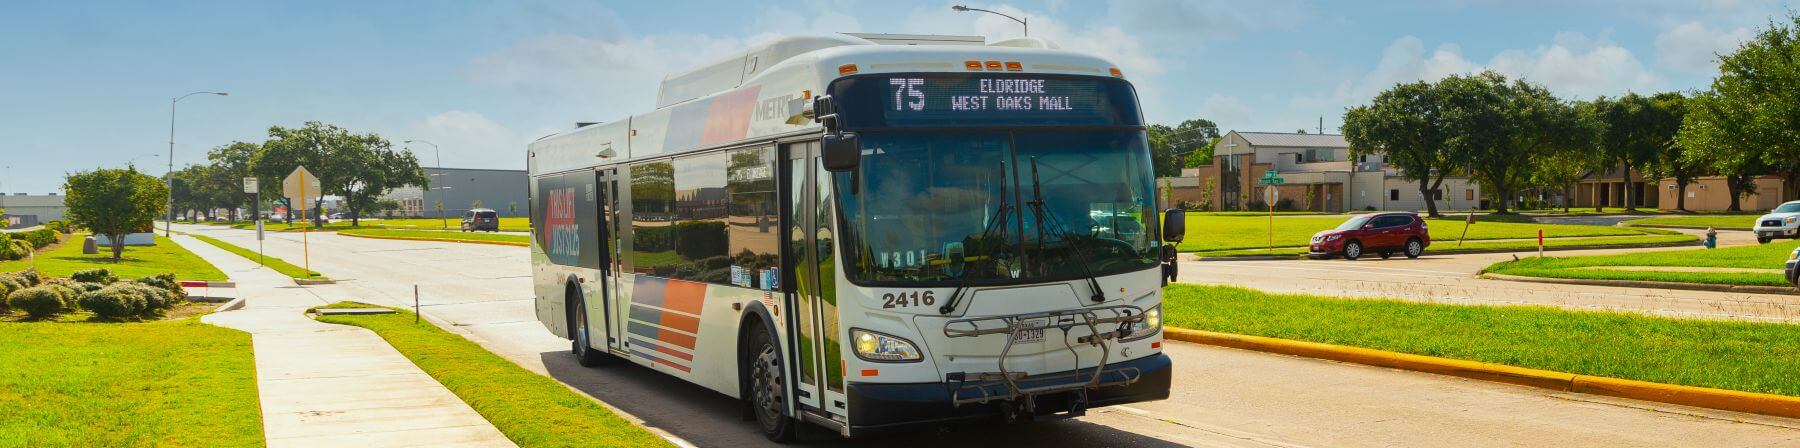 75 Eldridge bus